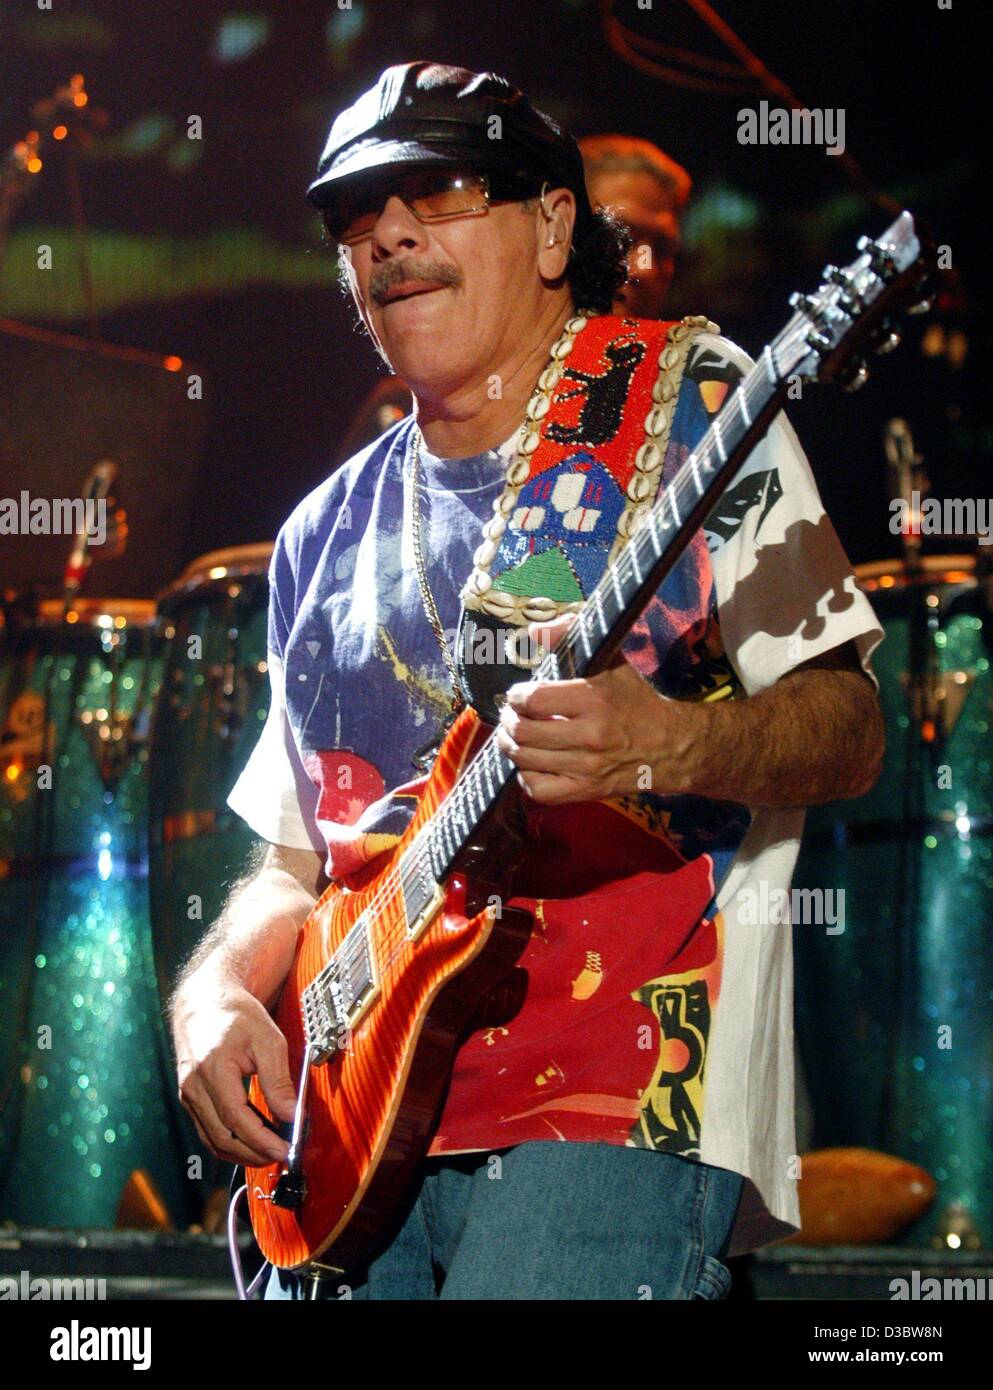 (Dpa) - mexikanische Gitarren-Virtuose Carlos Santana spielt seine Gitarre während des Konzerts in Hamburg, 2. September 2003. Der 56 Jahre alte Musiker begeistert Tausende von Fans auf das erste Konzert seiner Deutschland-Tournee. Während des Konzertes spielte er nicht nur seine bekannten Hits, aber auch Lieder von seinem aktuellen album Stockfoto